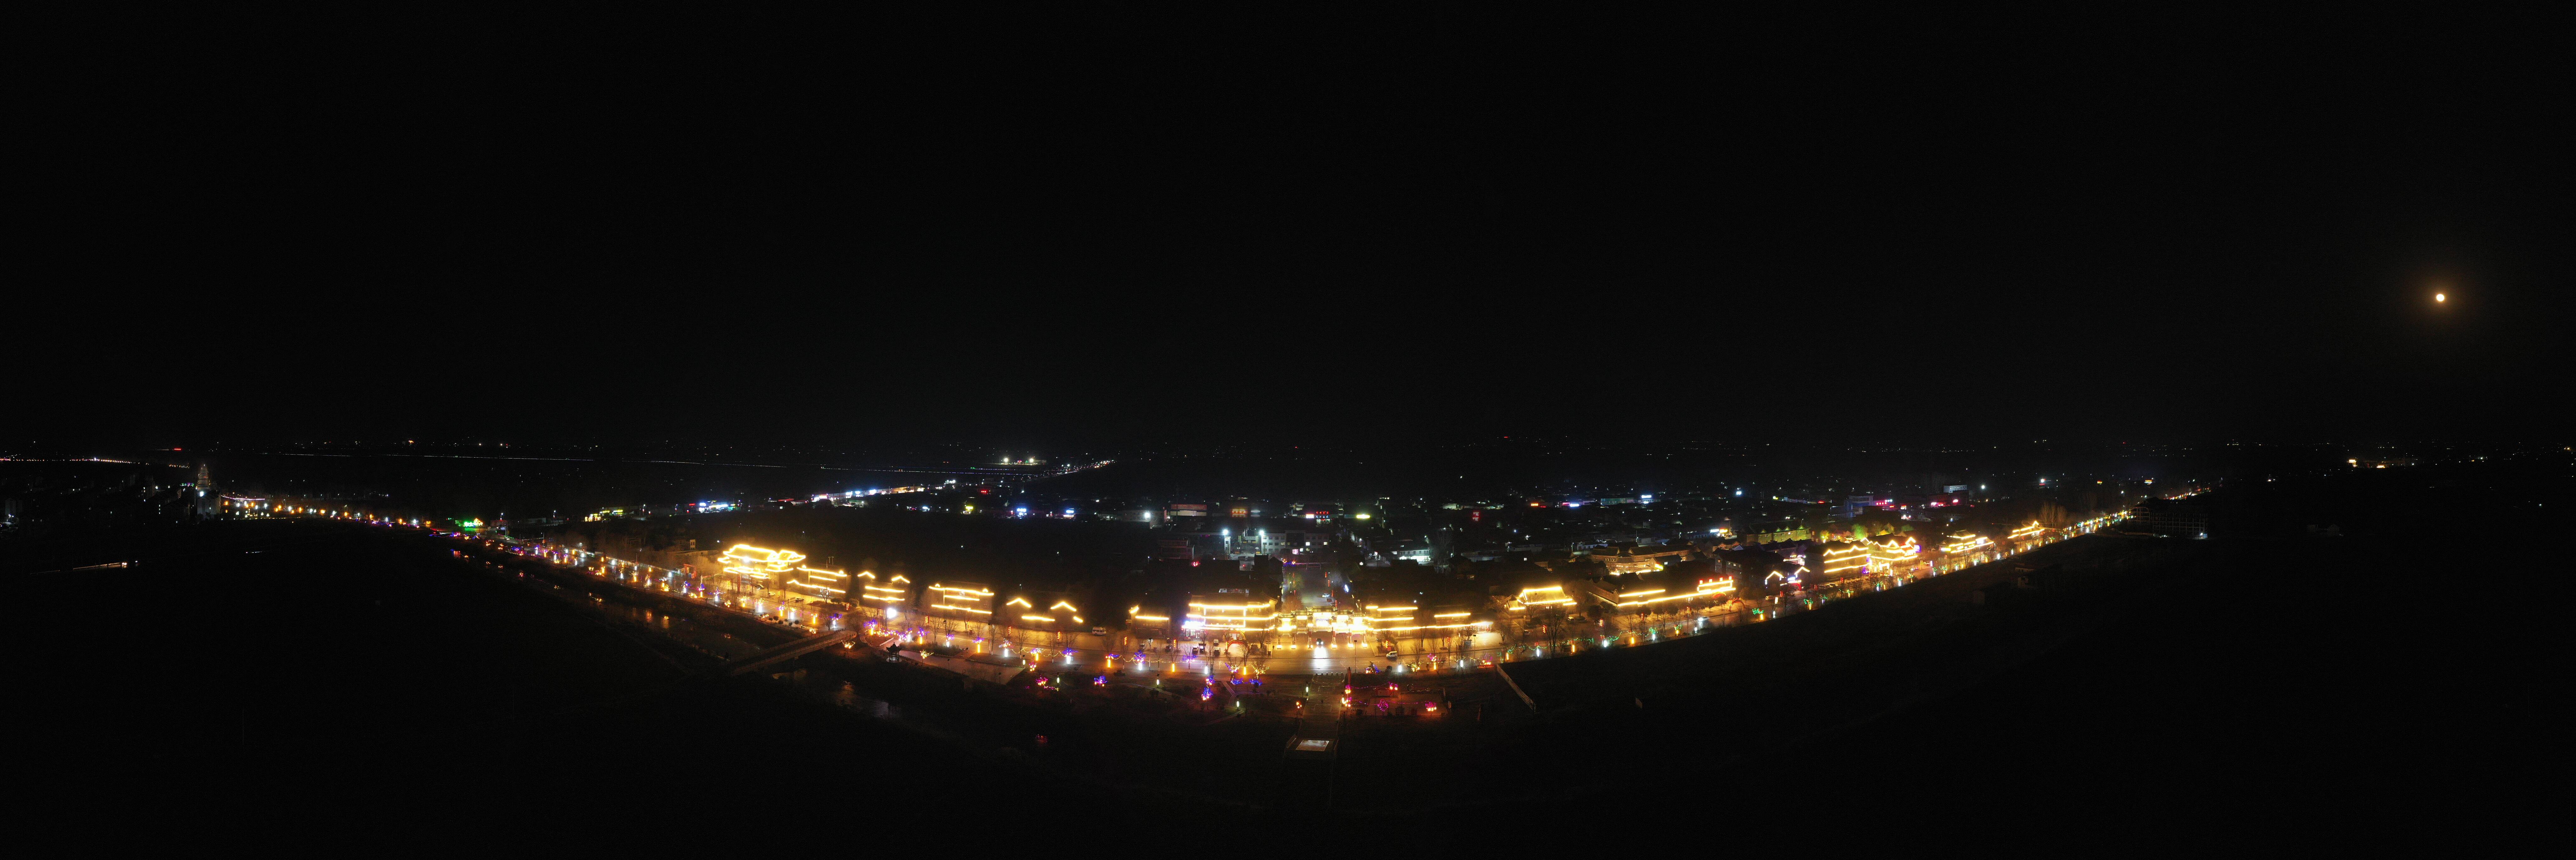 漯河夜景图片真实图片图片